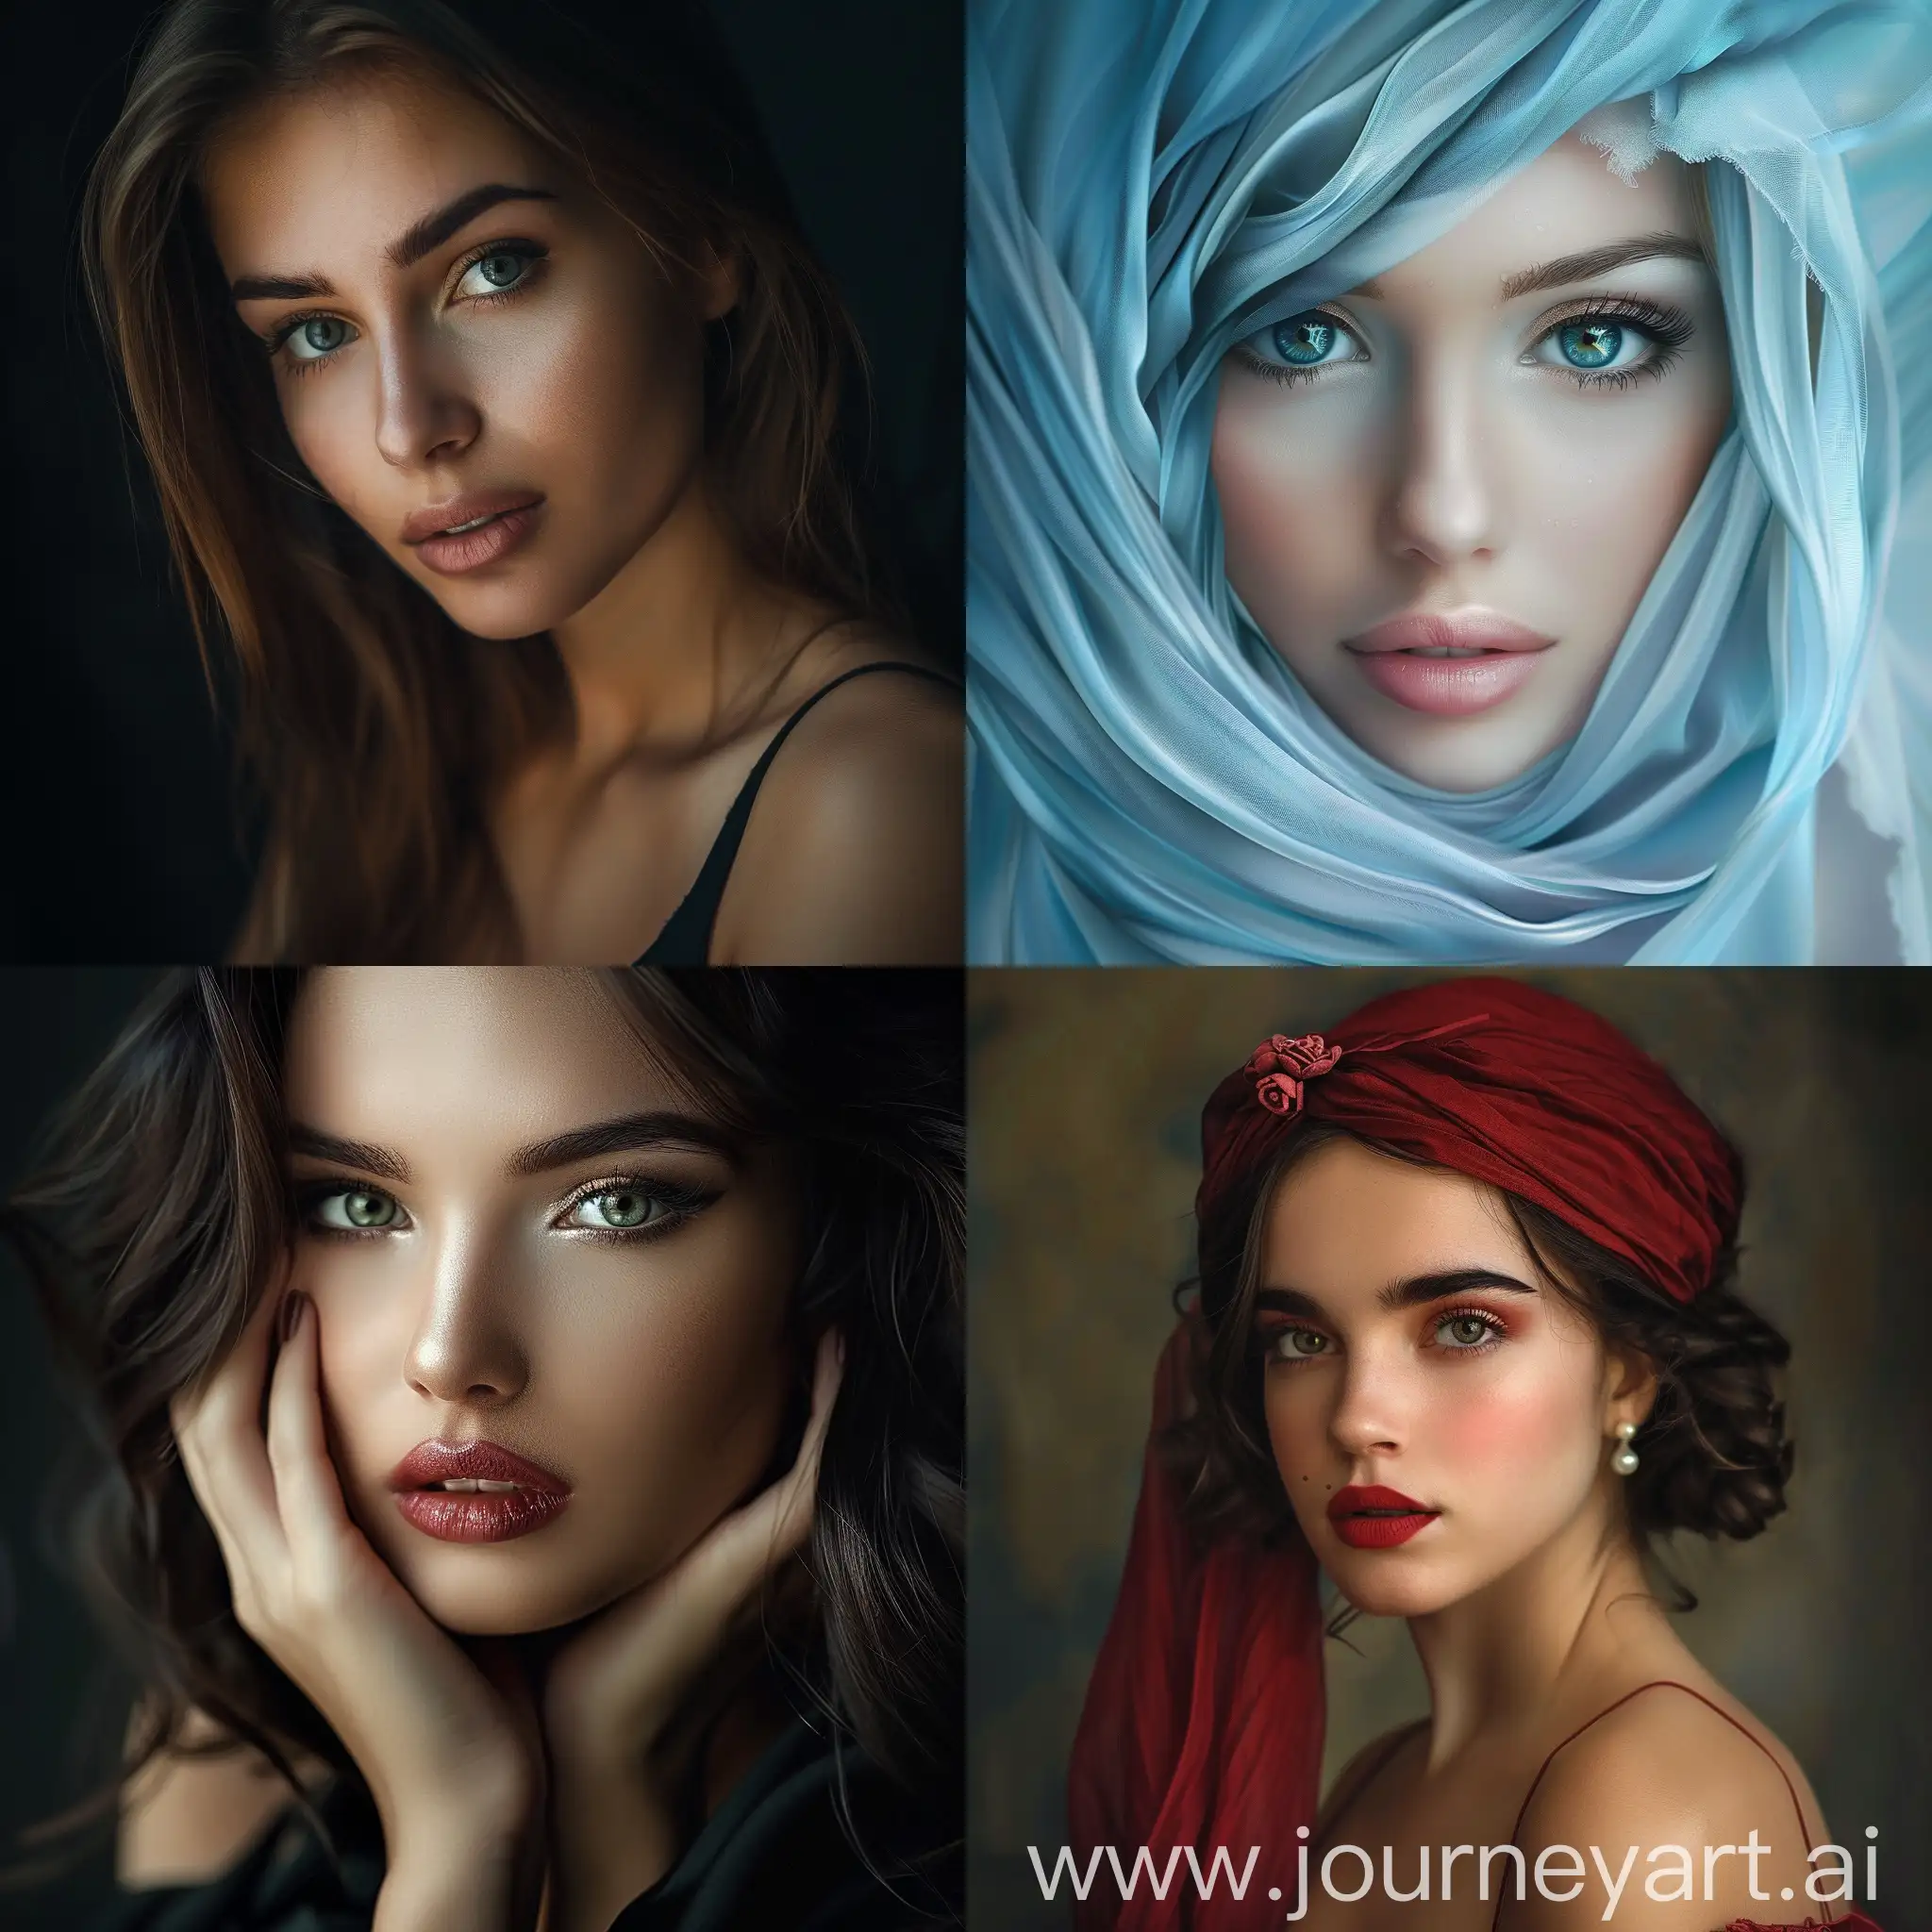 Elegant-Woman-Portrait-in-Vibrant-Colors